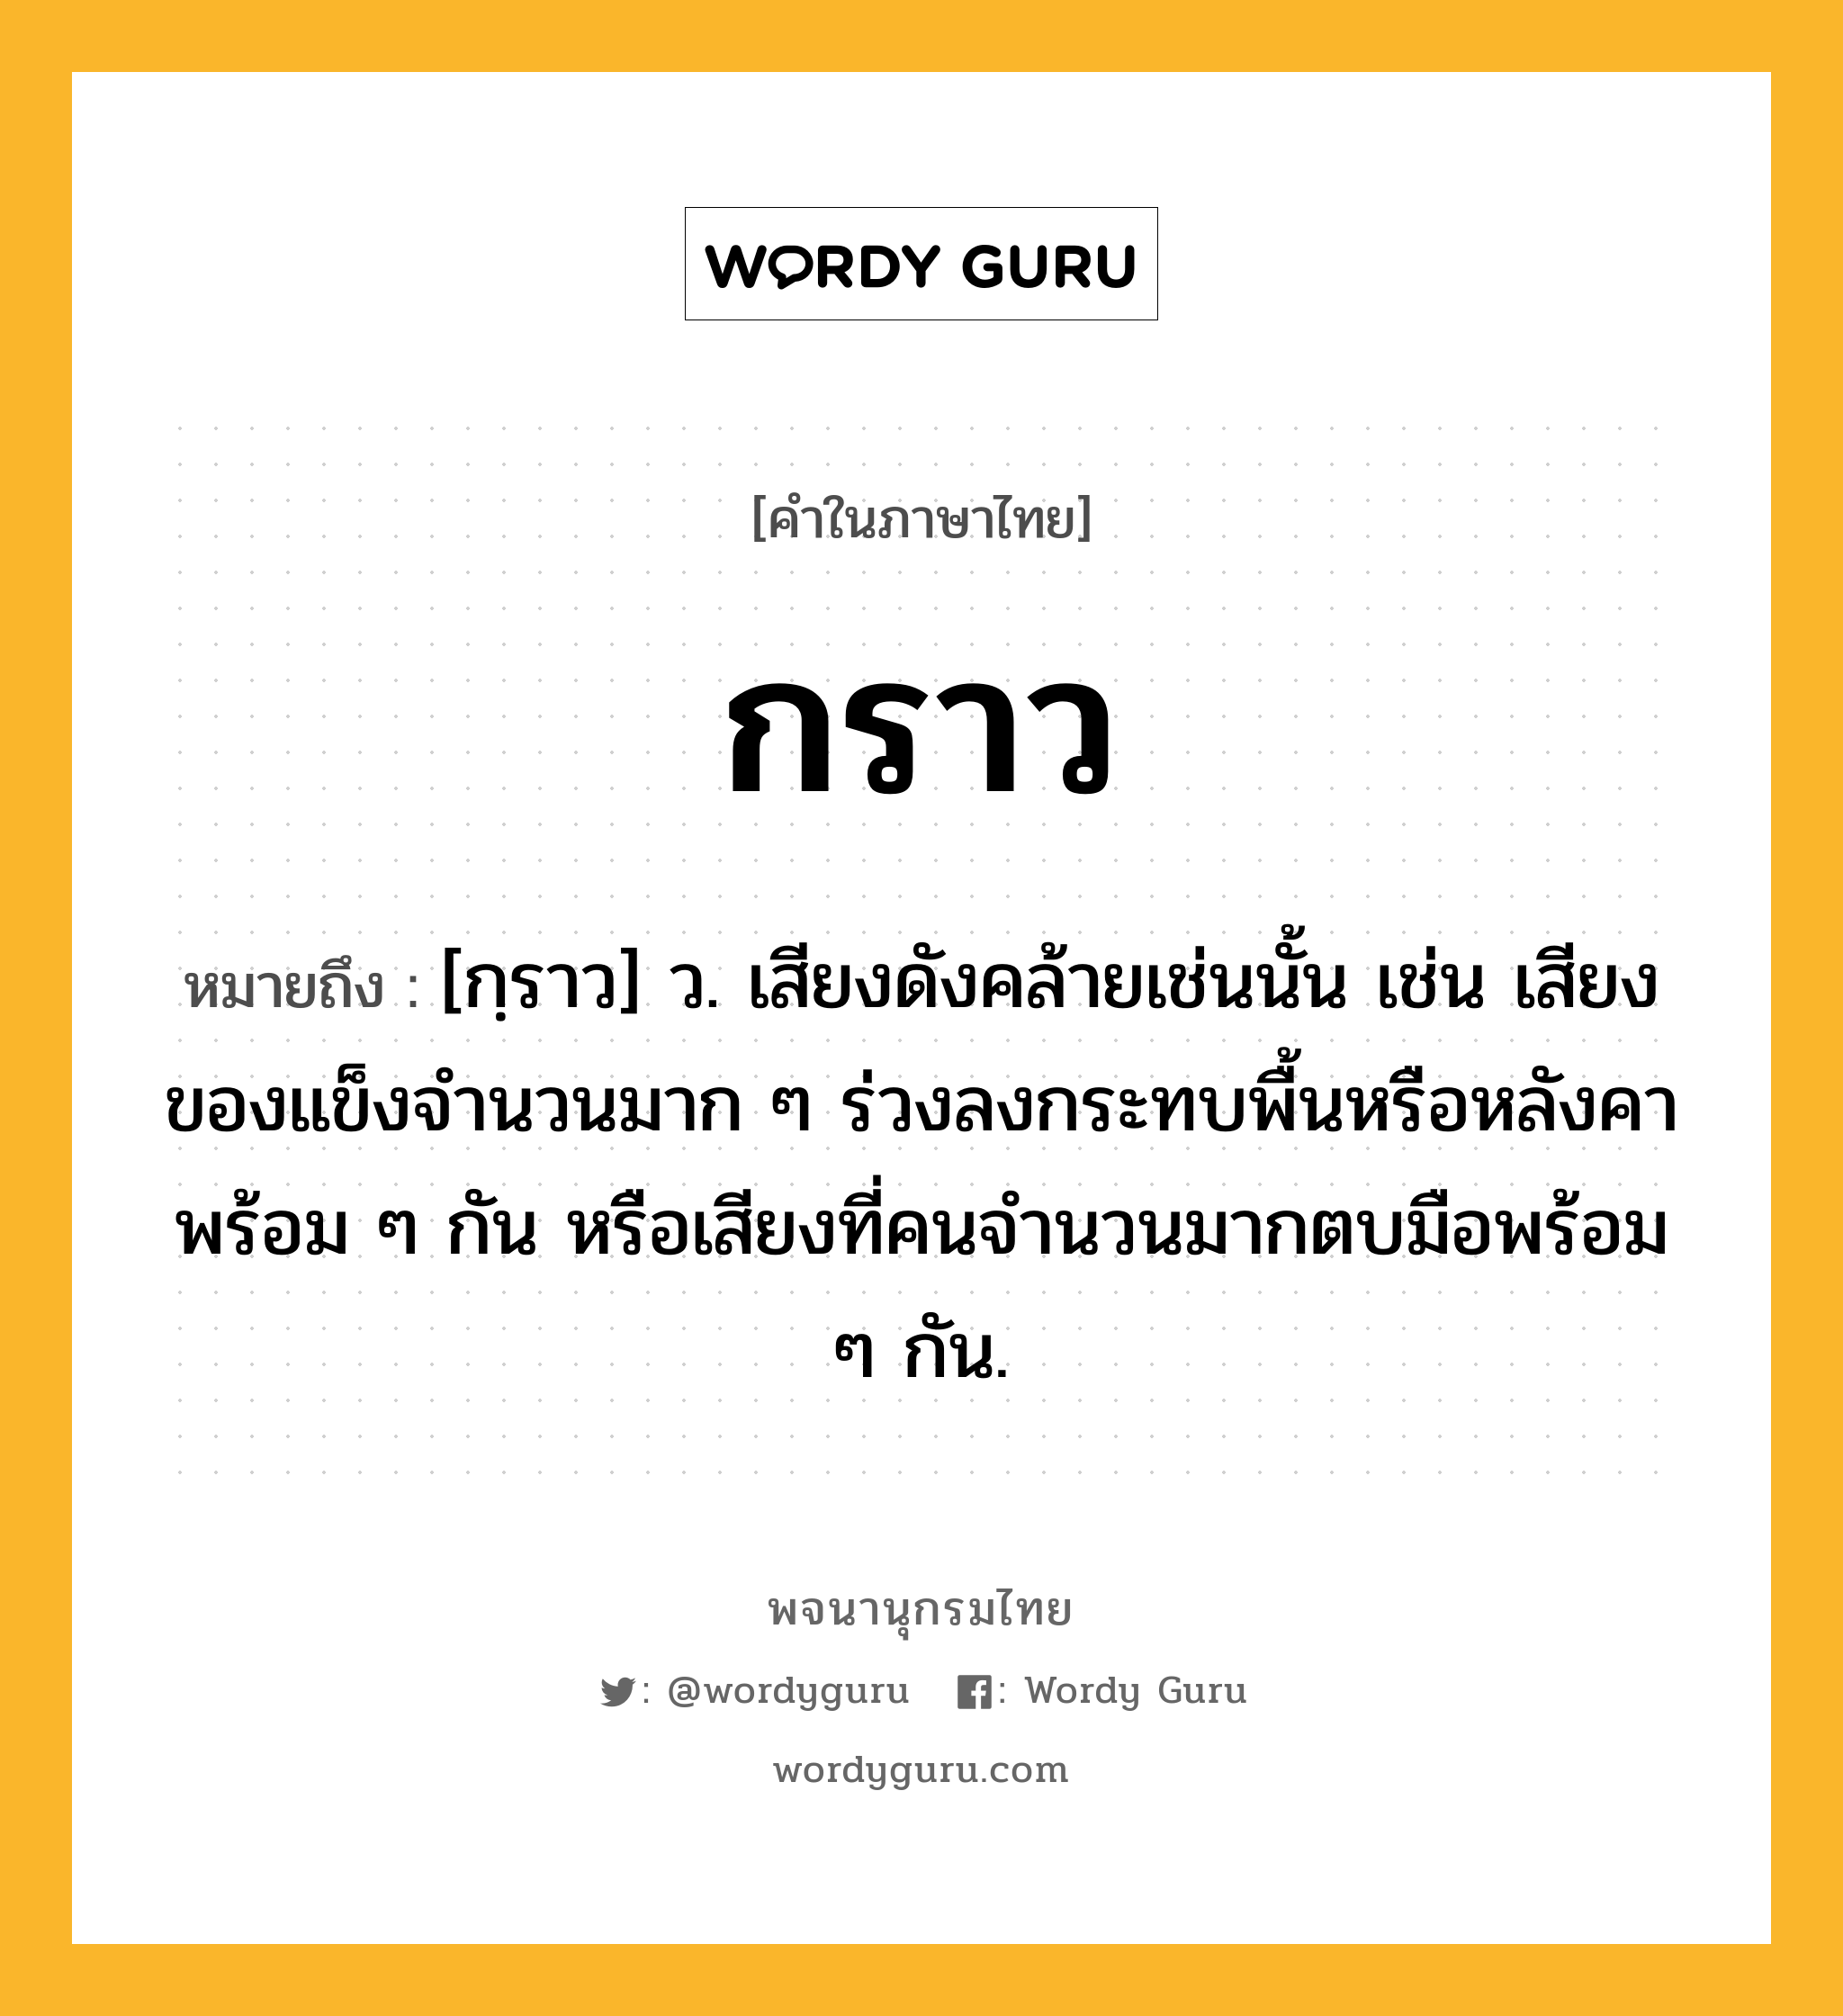 กราว ความหมาย หมายถึงอะไร?, คำในภาษาไทย กราว หมายถึง [กฺราว] ว. เสียงดังคล้ายเช่นนั้น เช่น เสียงของแข็งจํานวนมาก ๆ ร่วงลงกระทบพื้นหรือหลังคาพร้อม ๆ กัน หรือเสียงที่คนจํานวนมากตบมือพร้อม ๆ กัน.